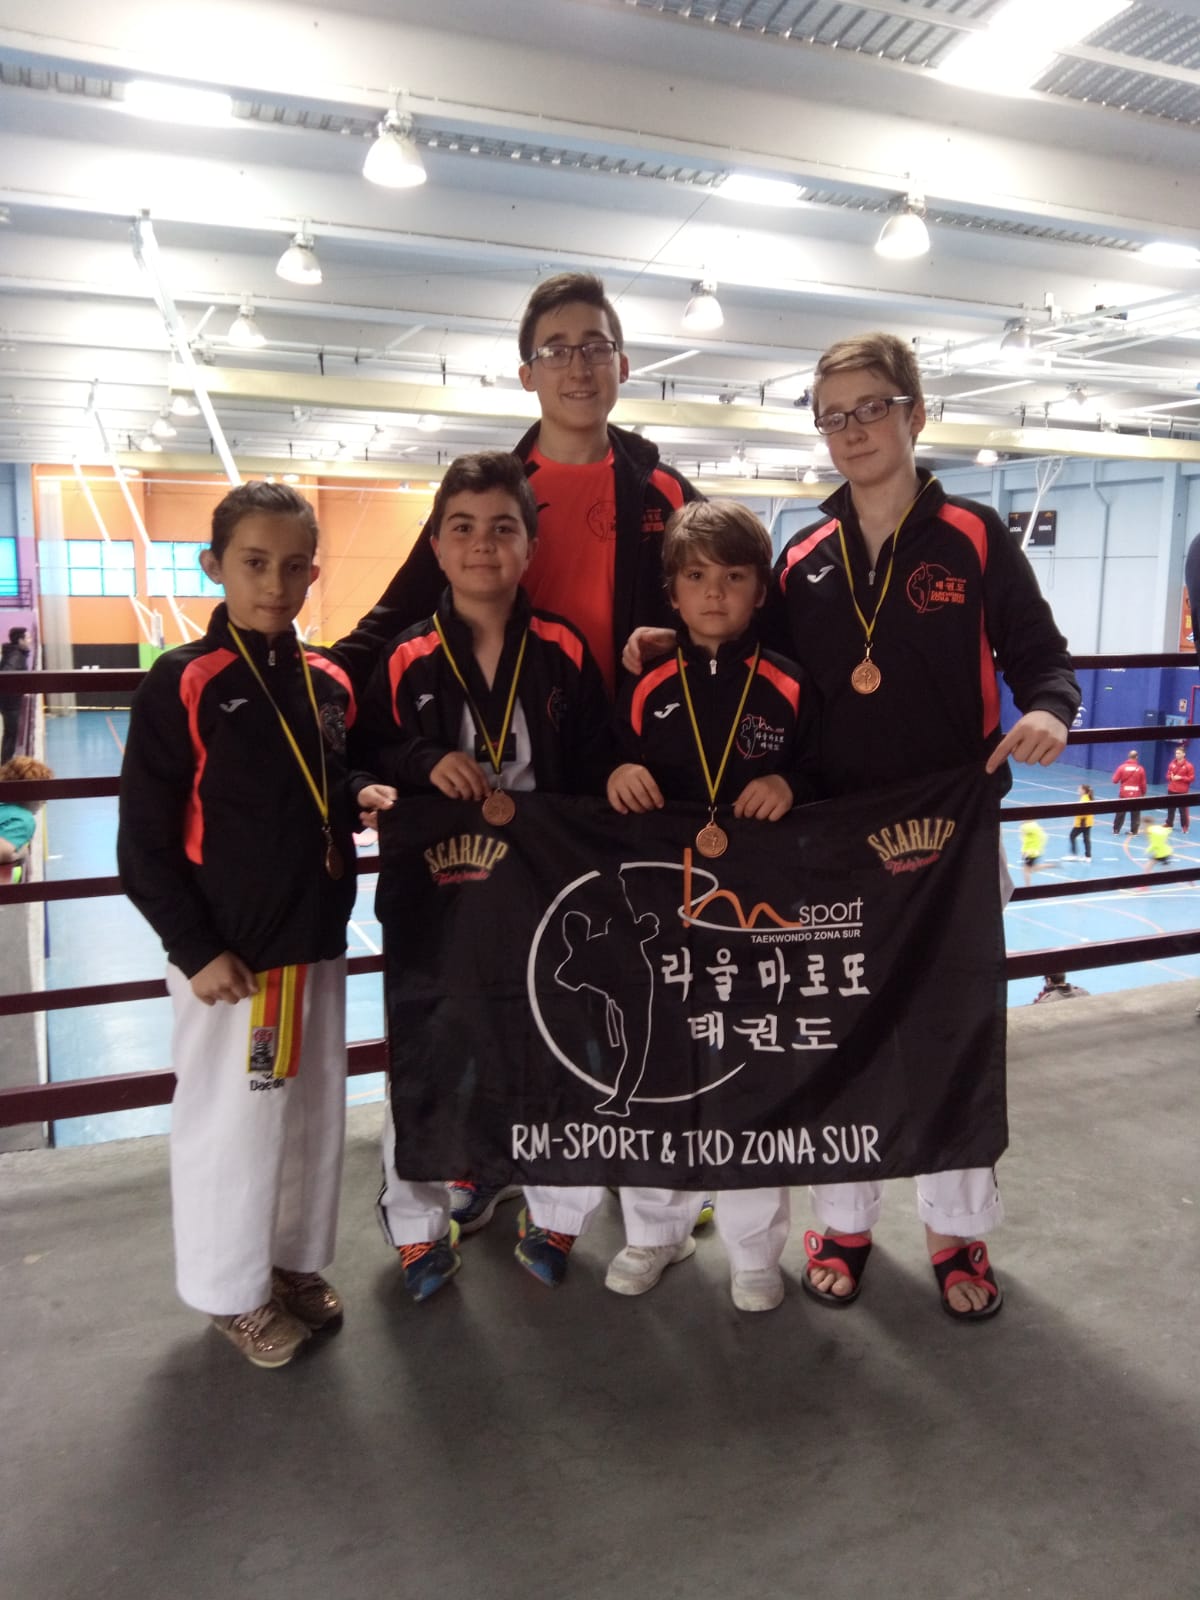 Cuatro medallas para el Taekwondo RM-Sport & TKD zona sur